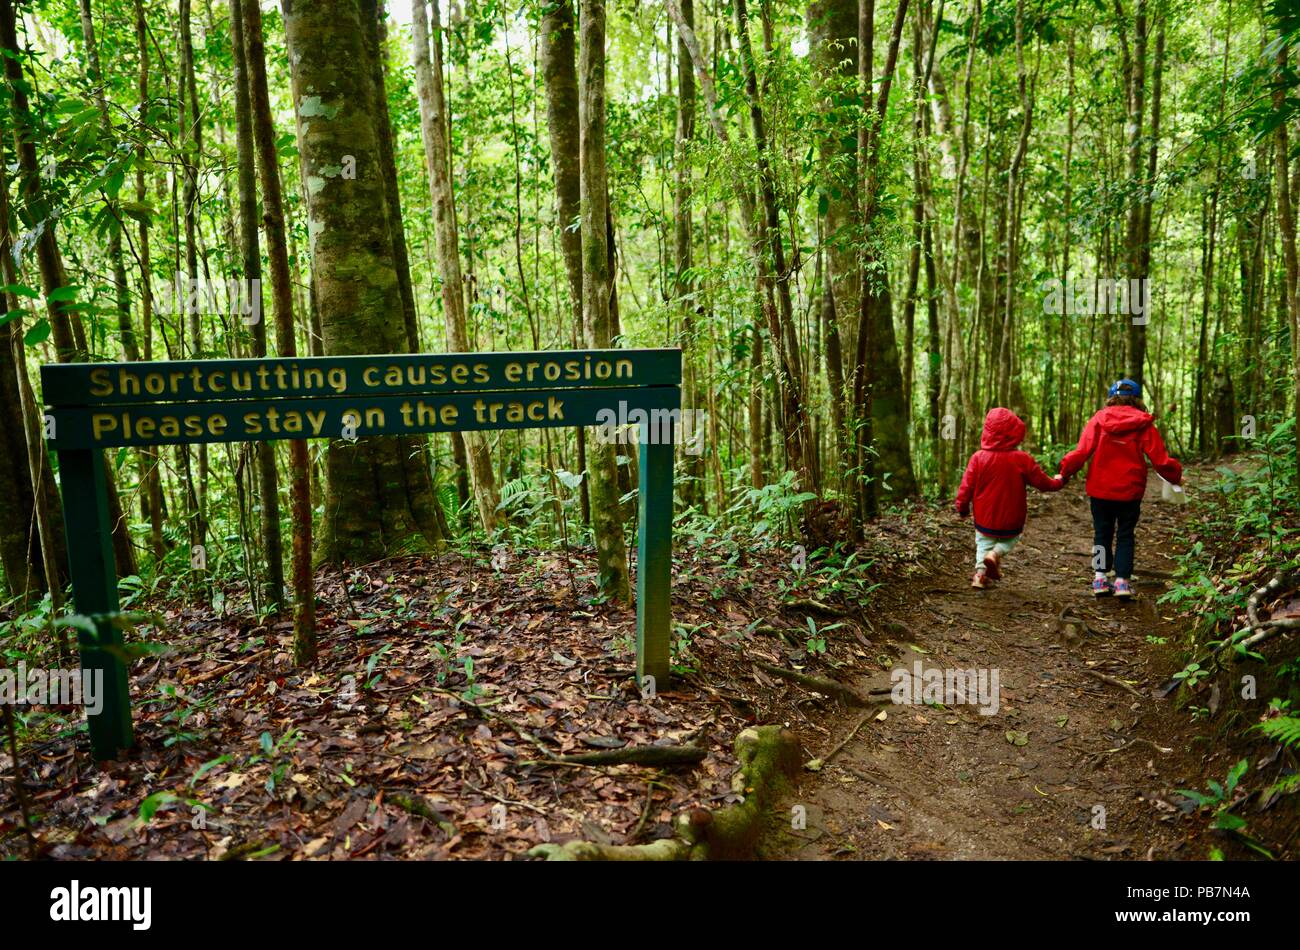 Shortcutting verursachen erosion Bitte bleiben Sie auf den Spuren Zeichen, Kinder zu Fuß auf einem Pfad in einem tropischen Regenwald, Atherton Tablelands, QLD, Australien Stockfoto